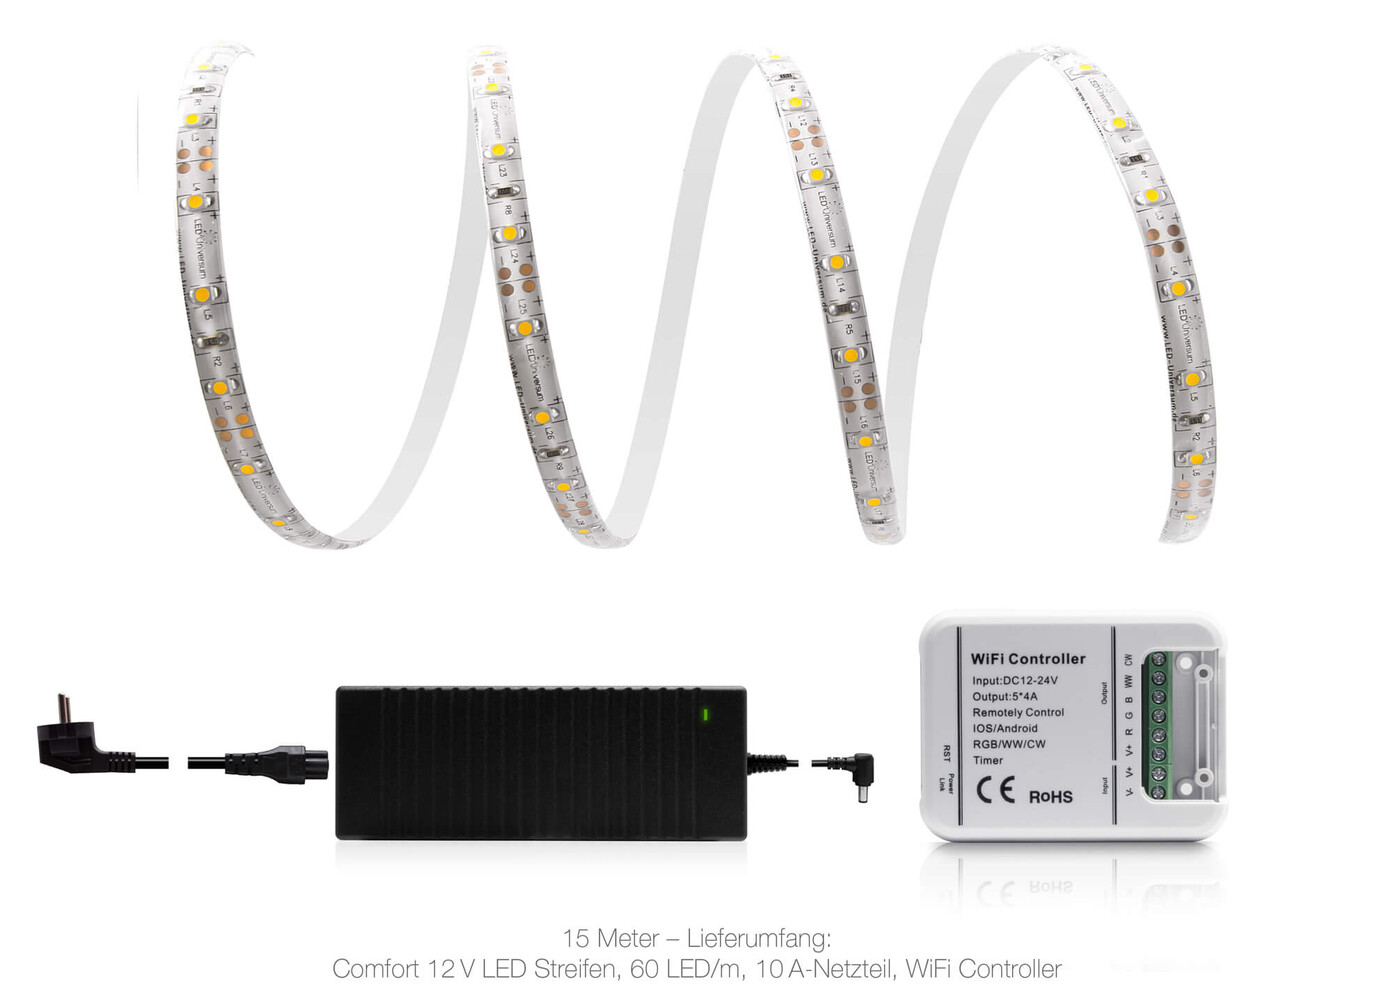 Hochwertiger LED Streifen von LED Universum in warmweiß mit 60 LEDs pro Meter und IP65 Schutz